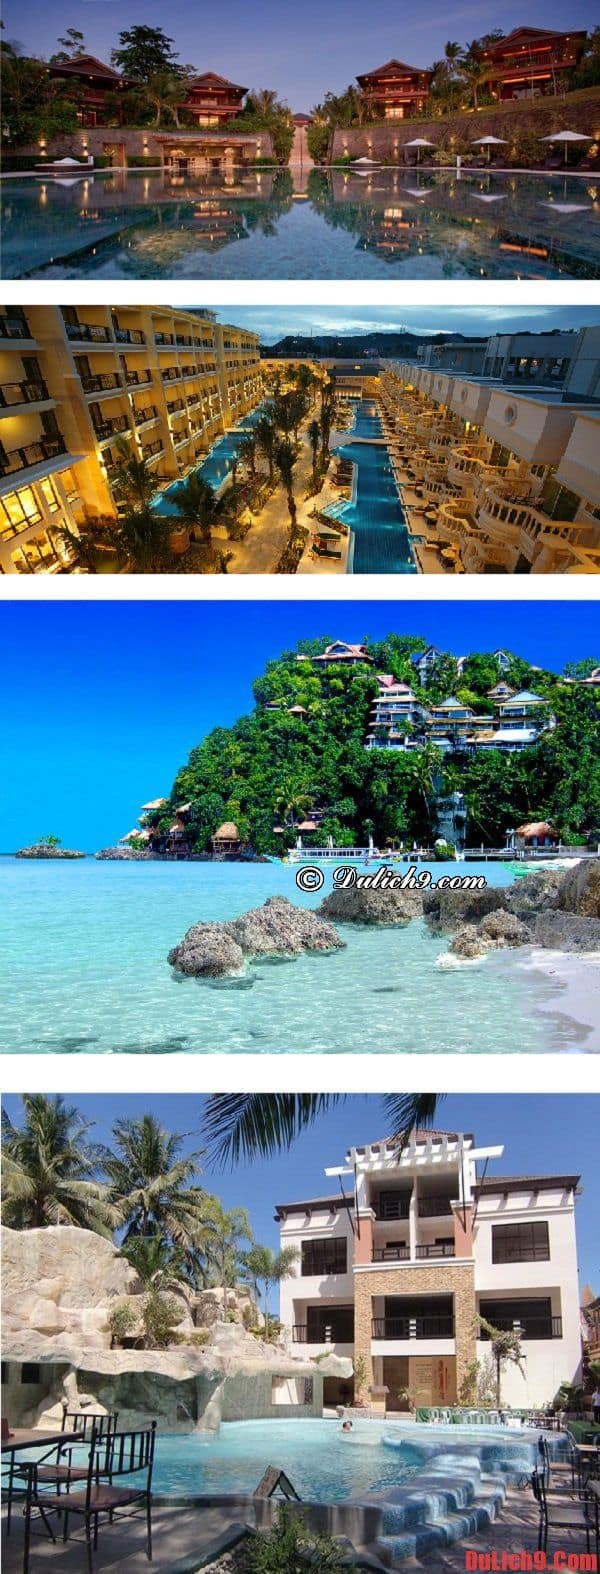 Kinh nghiệm đặt phòng khách sạn, guest house giá rẻ, chất lượng khi du lịch Boracay tự túc ăn ở. Du lịch Boracay nên ở khách sạn nào? Khách sạn ở đảo Boracay giá rẻ